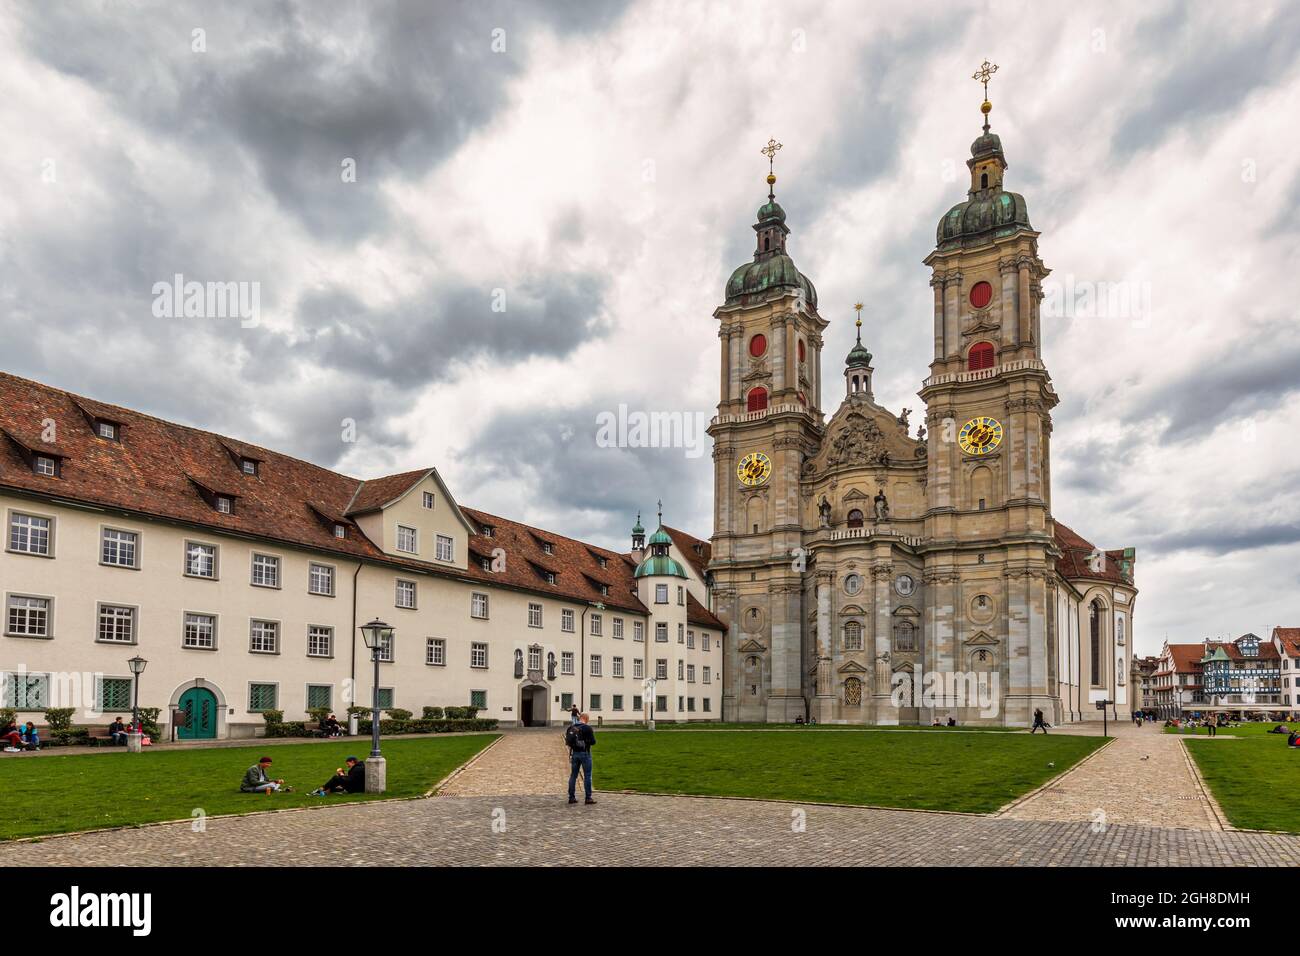 Abbey of St Gallen, Canton of St Gallen, Switzerland Stock Photo